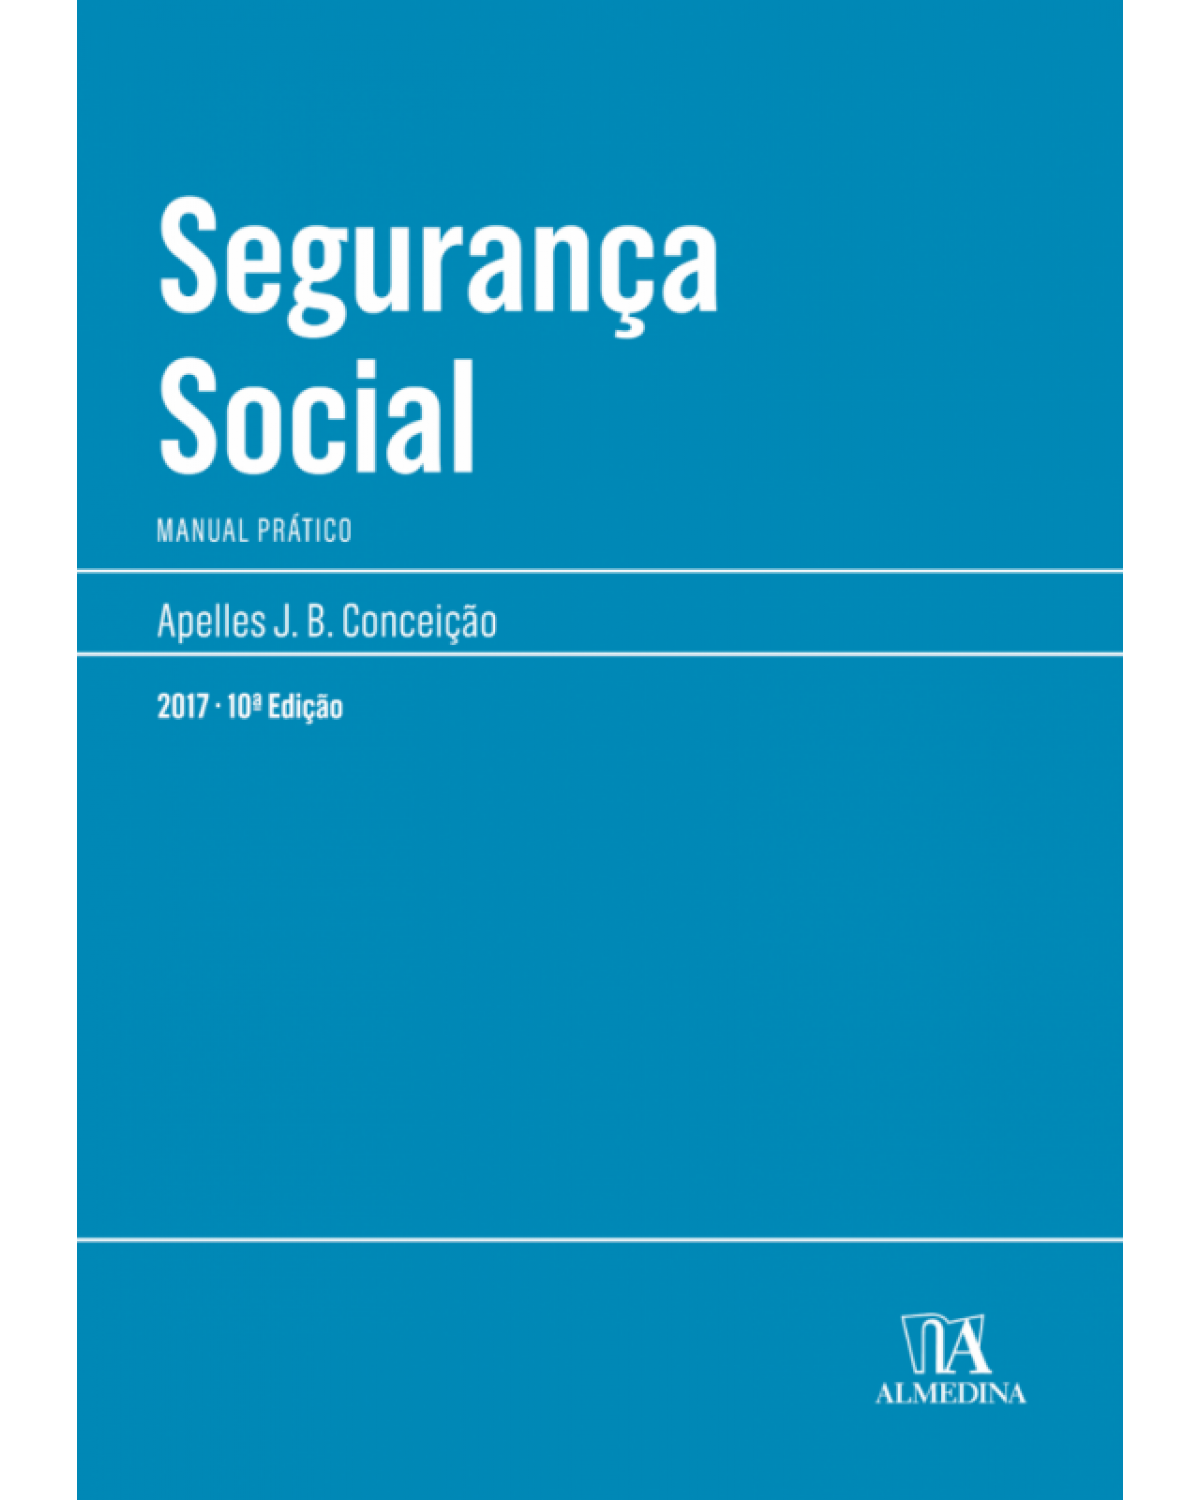 Segurança social - Manual prático - 10ª Edição | 2017